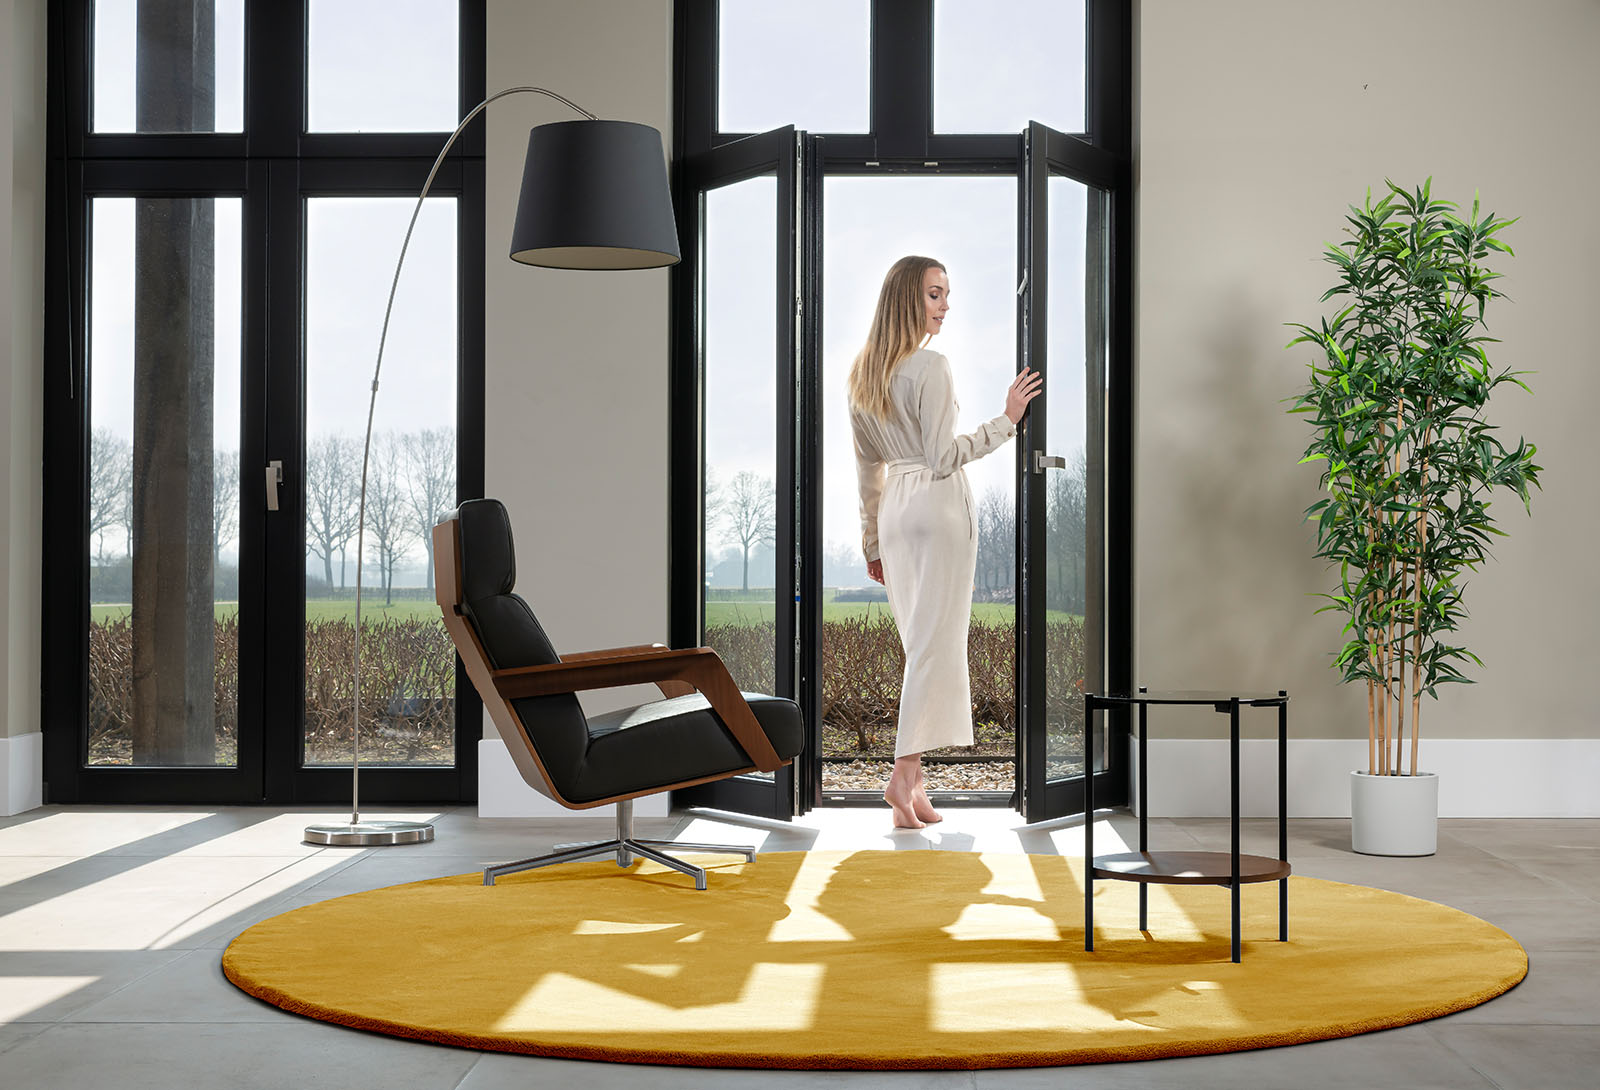 Vrouw kijkt om naar rond geel vloerkleed vanuit deuropening